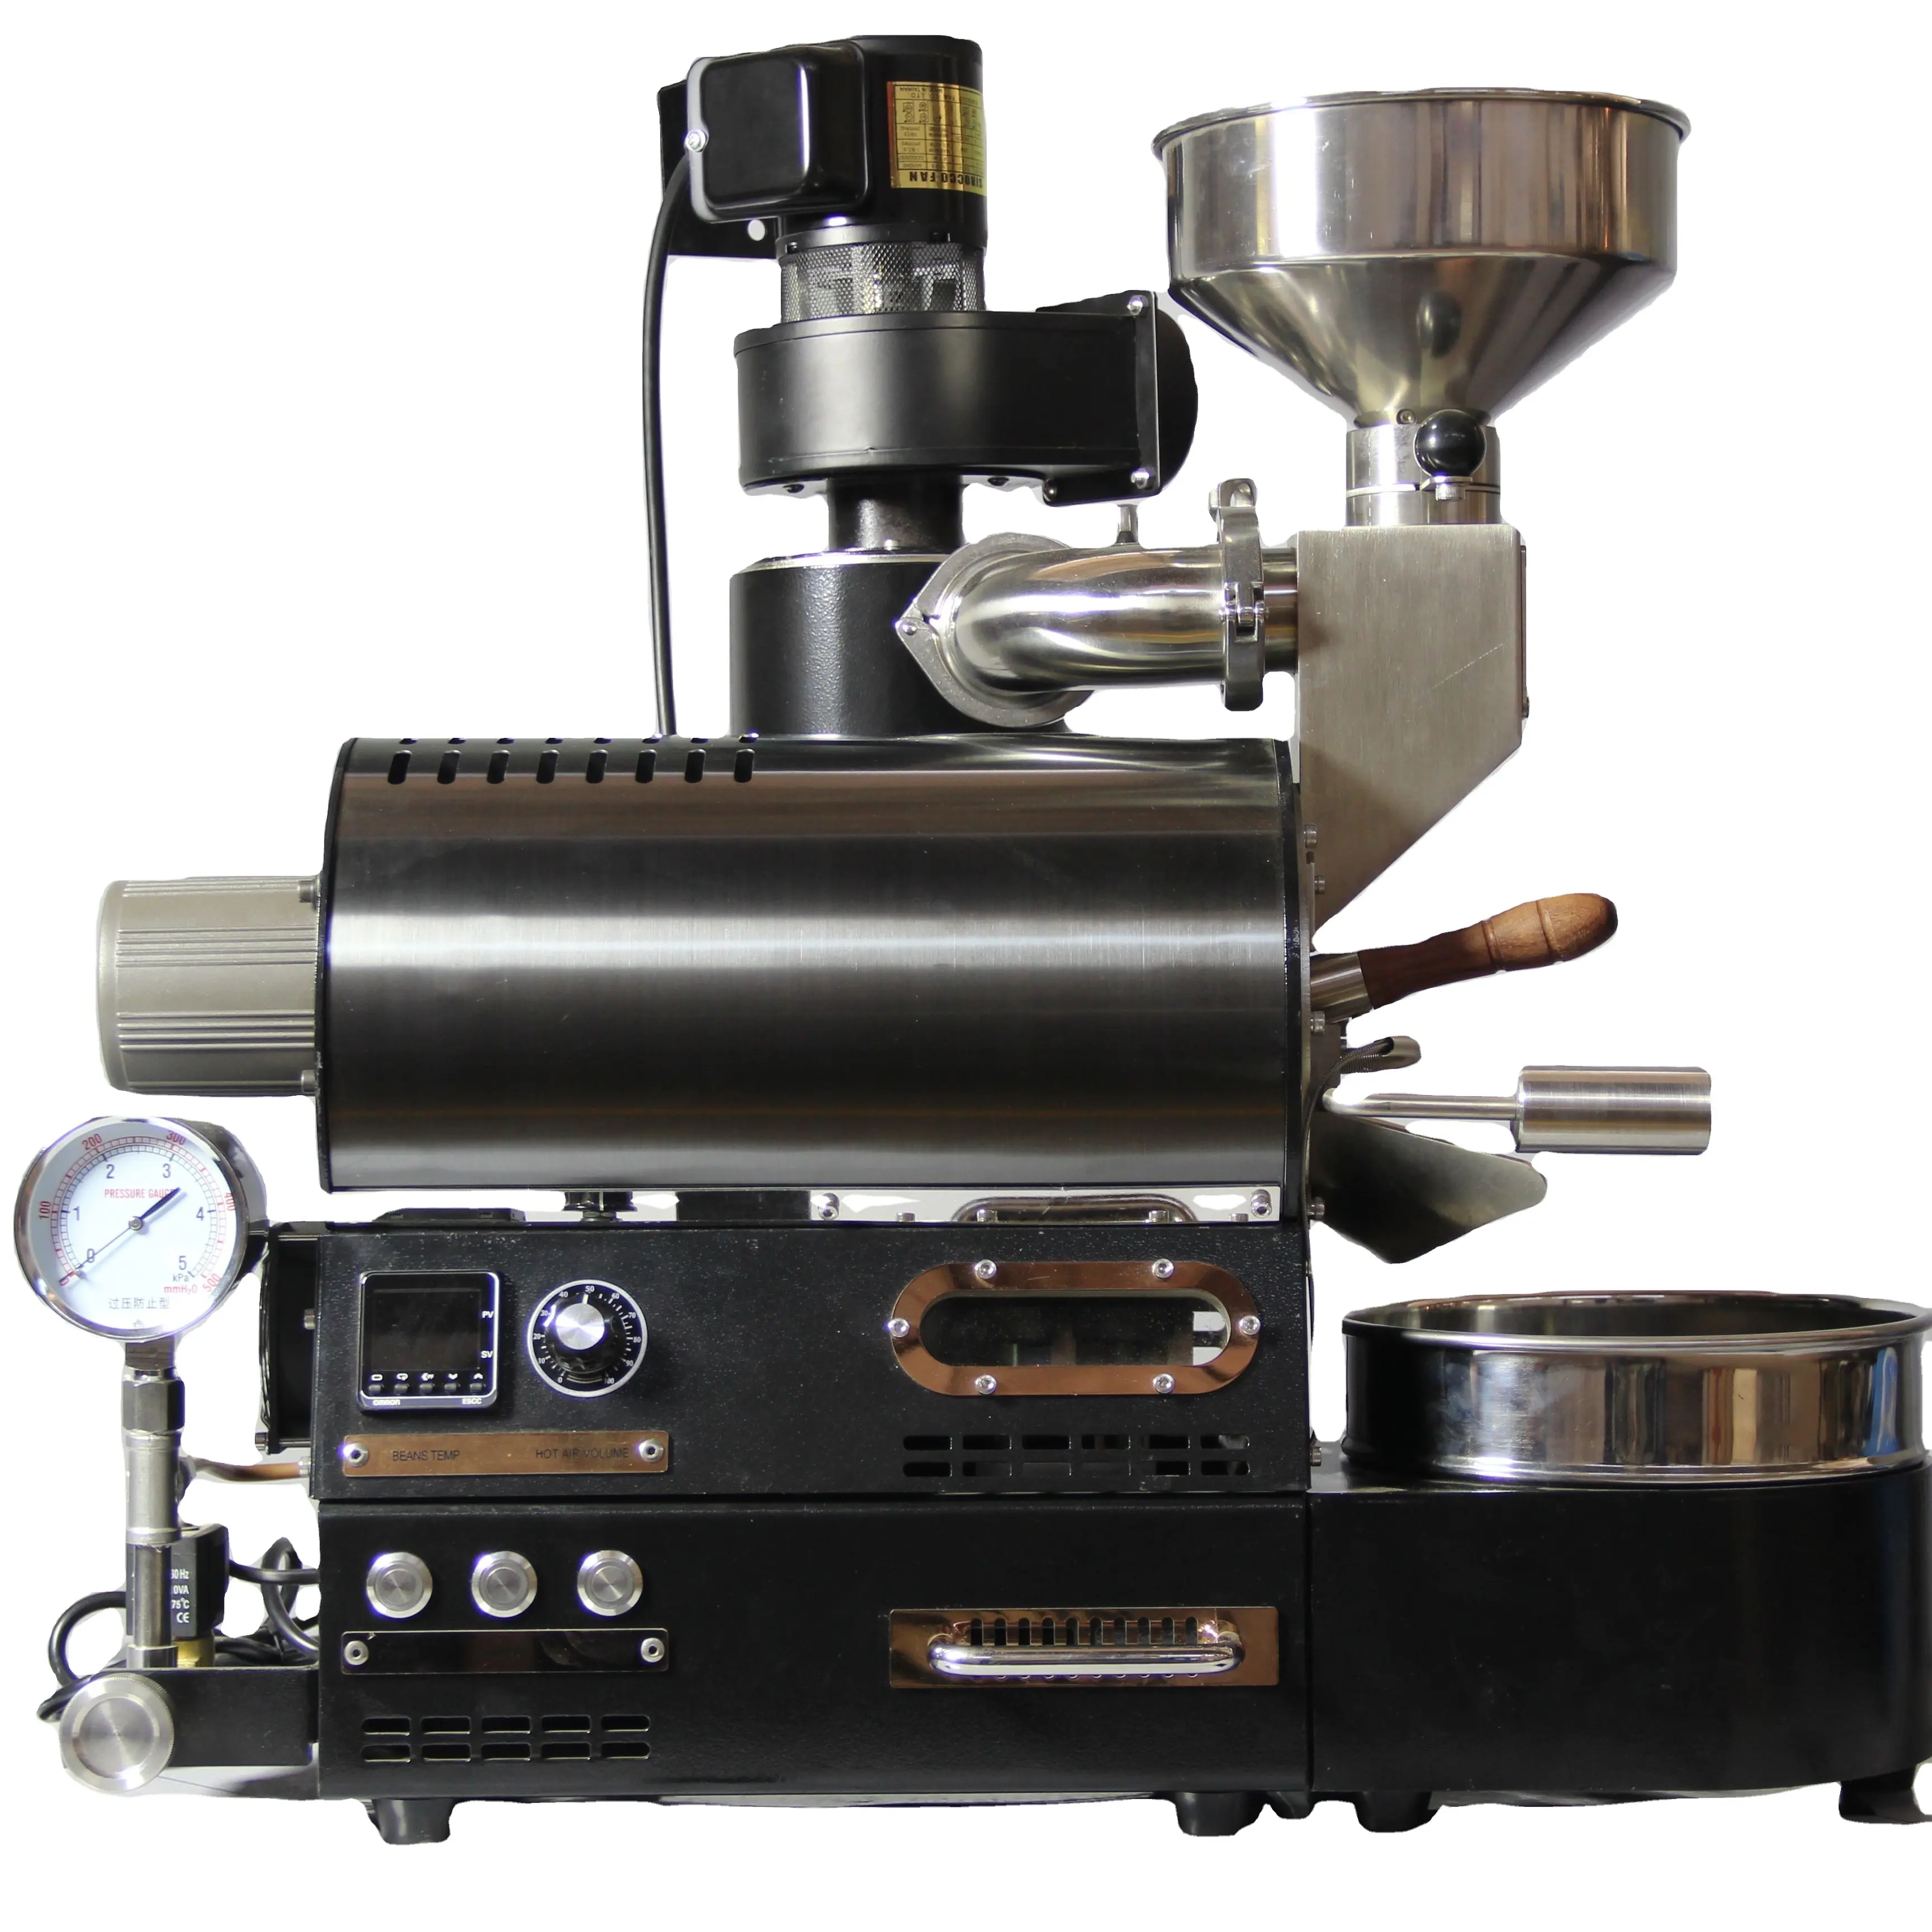 Wintop 100g 300g 500g 600g Mini satış garanti kavurma kahve kavurma makineleri ev kahve tost makineleri ev için